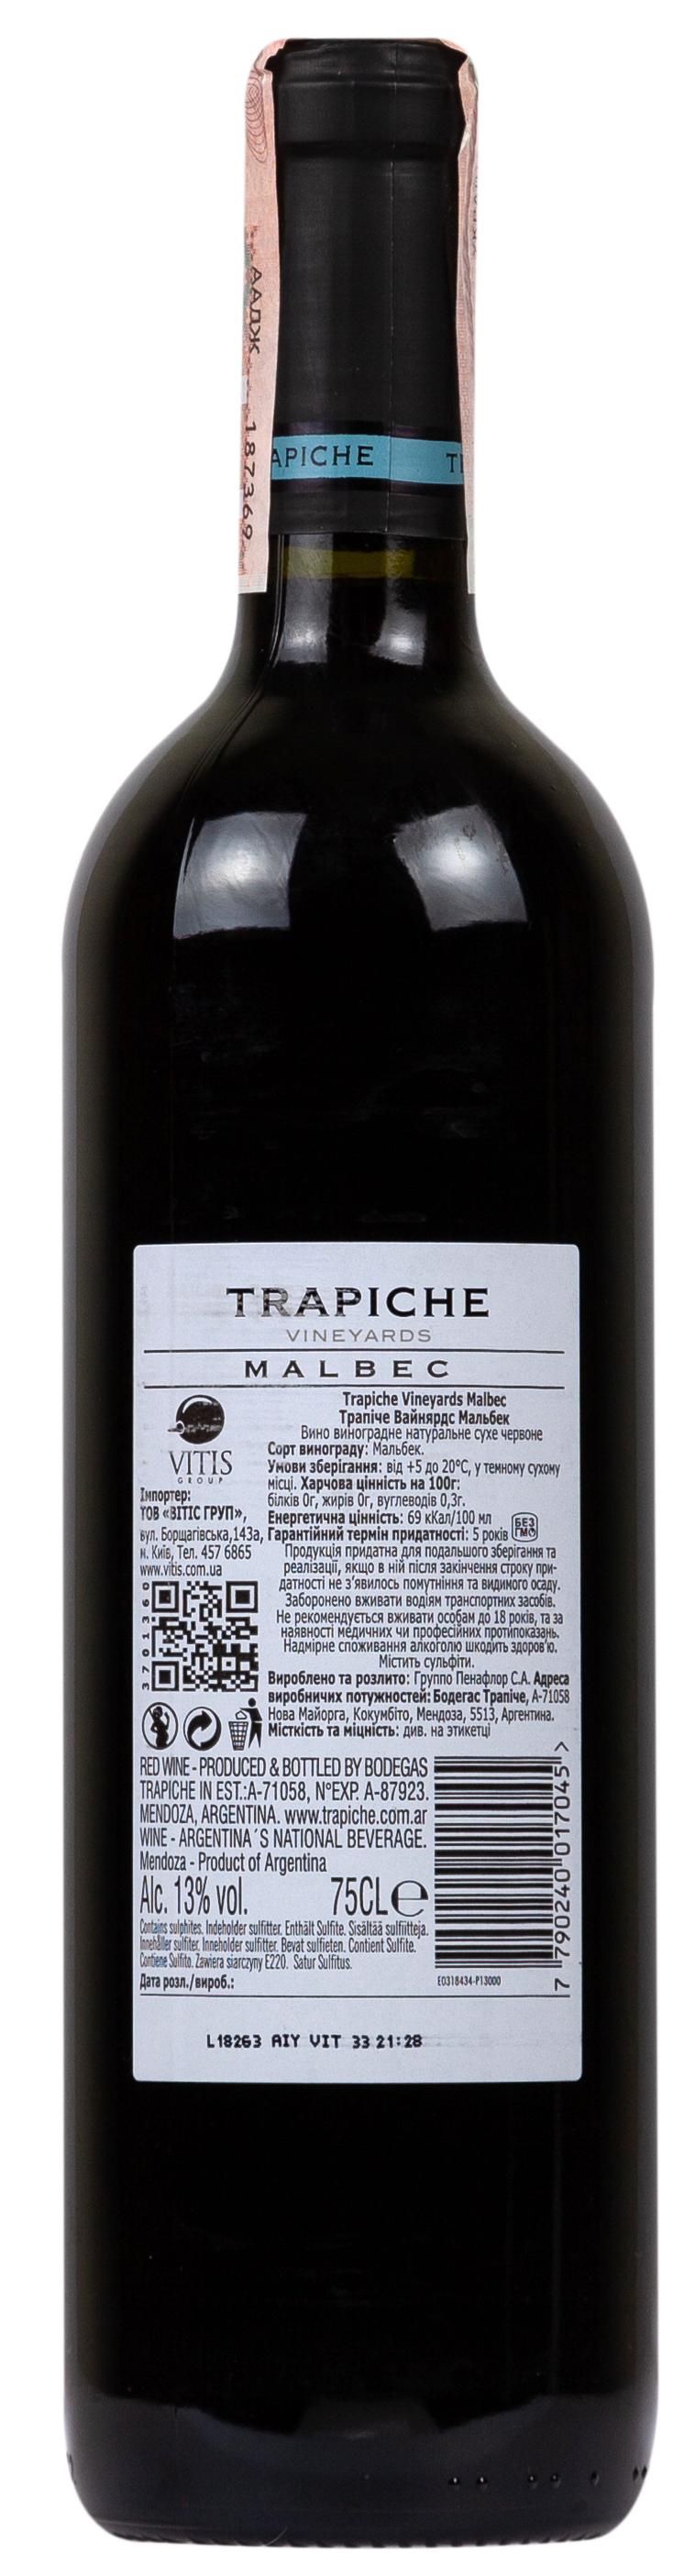 Trapiche Vineyards Malbec 2018 Set 6 Bottles - 2